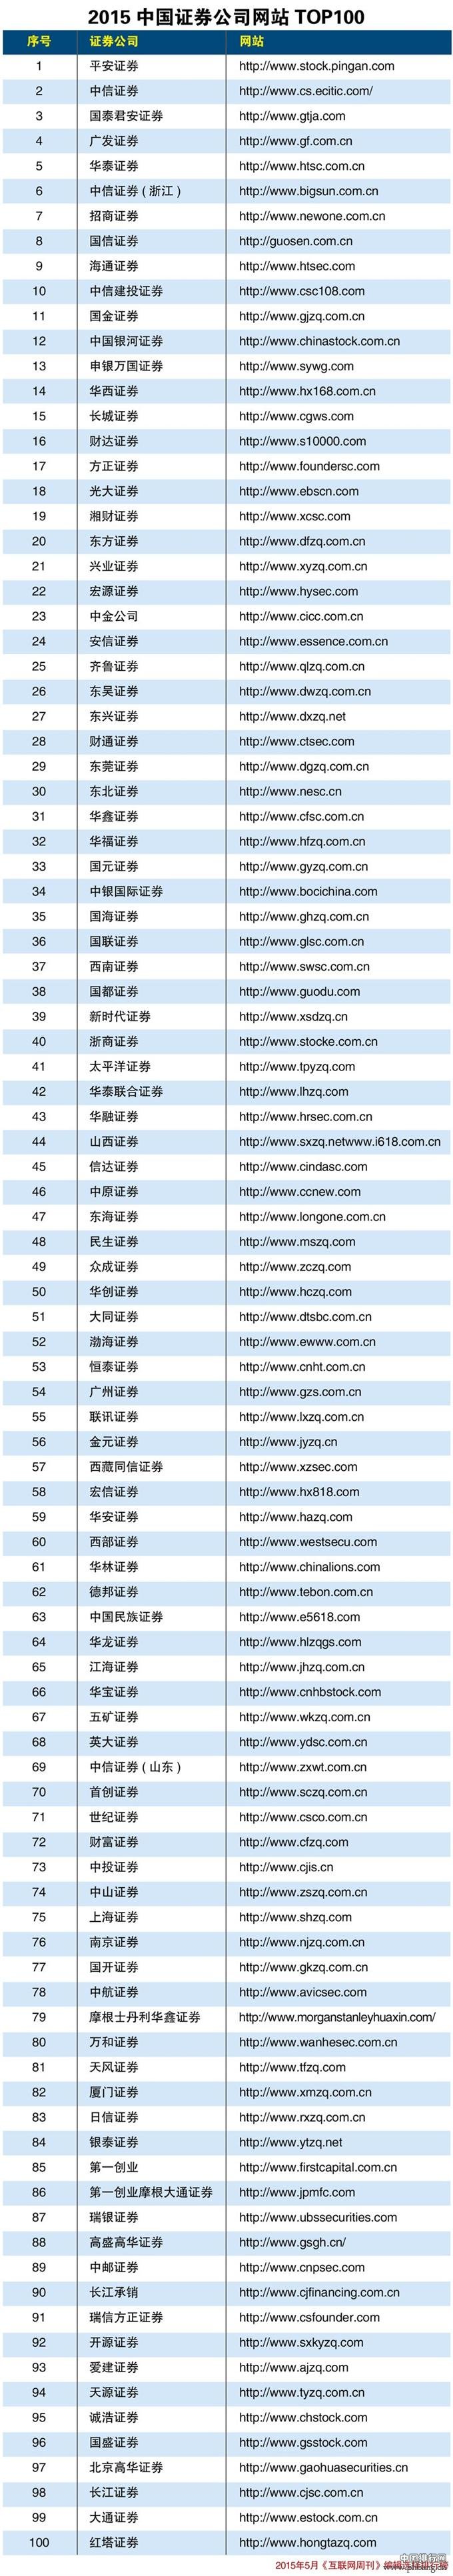 2015中国证券公司网站排名TOP100